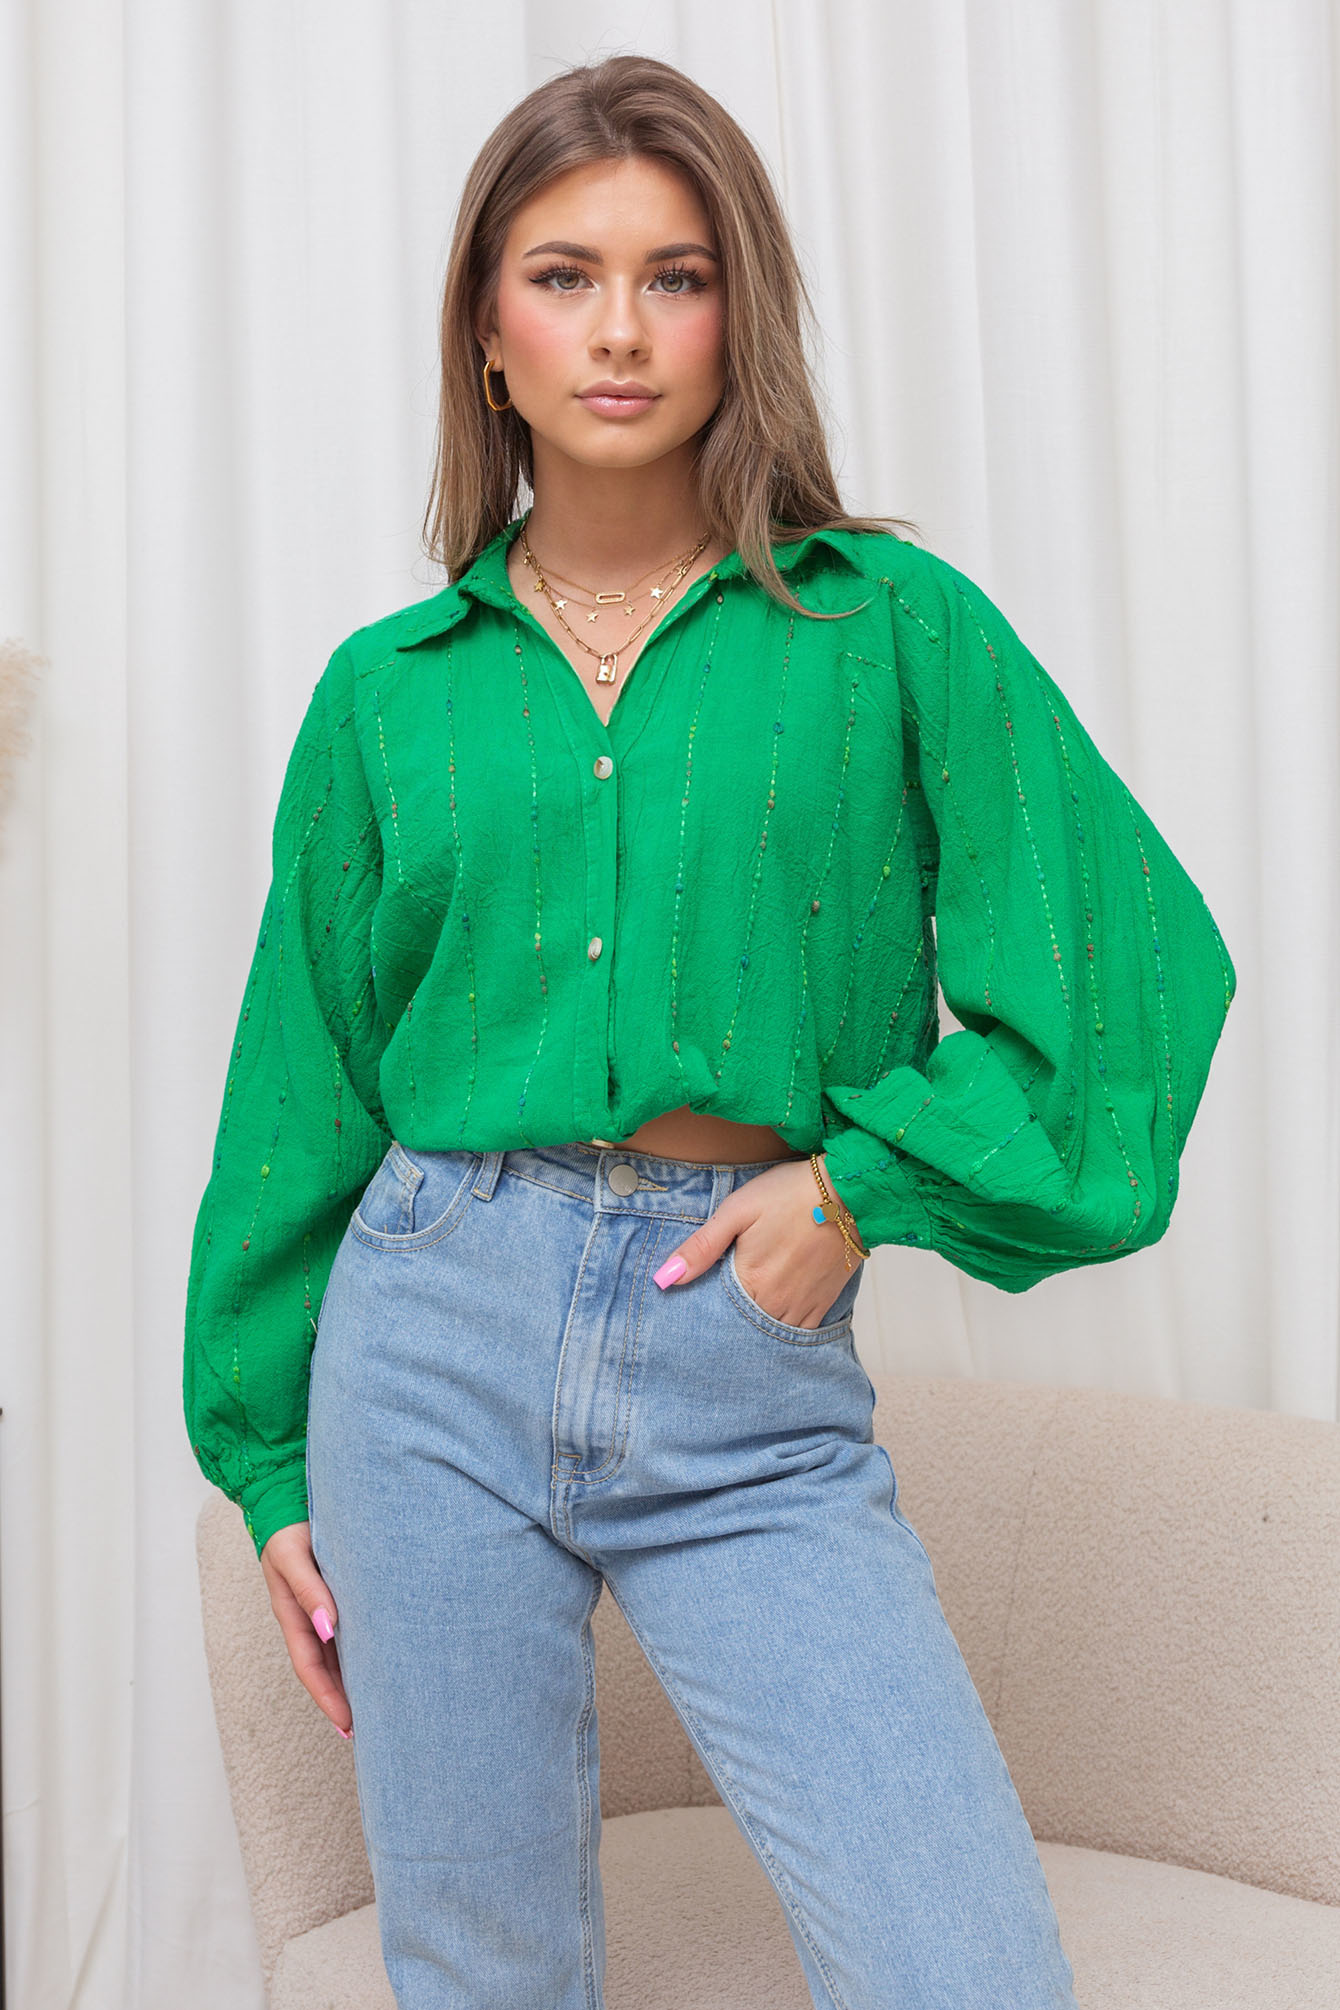 Shop groene blouse | - Elise Store